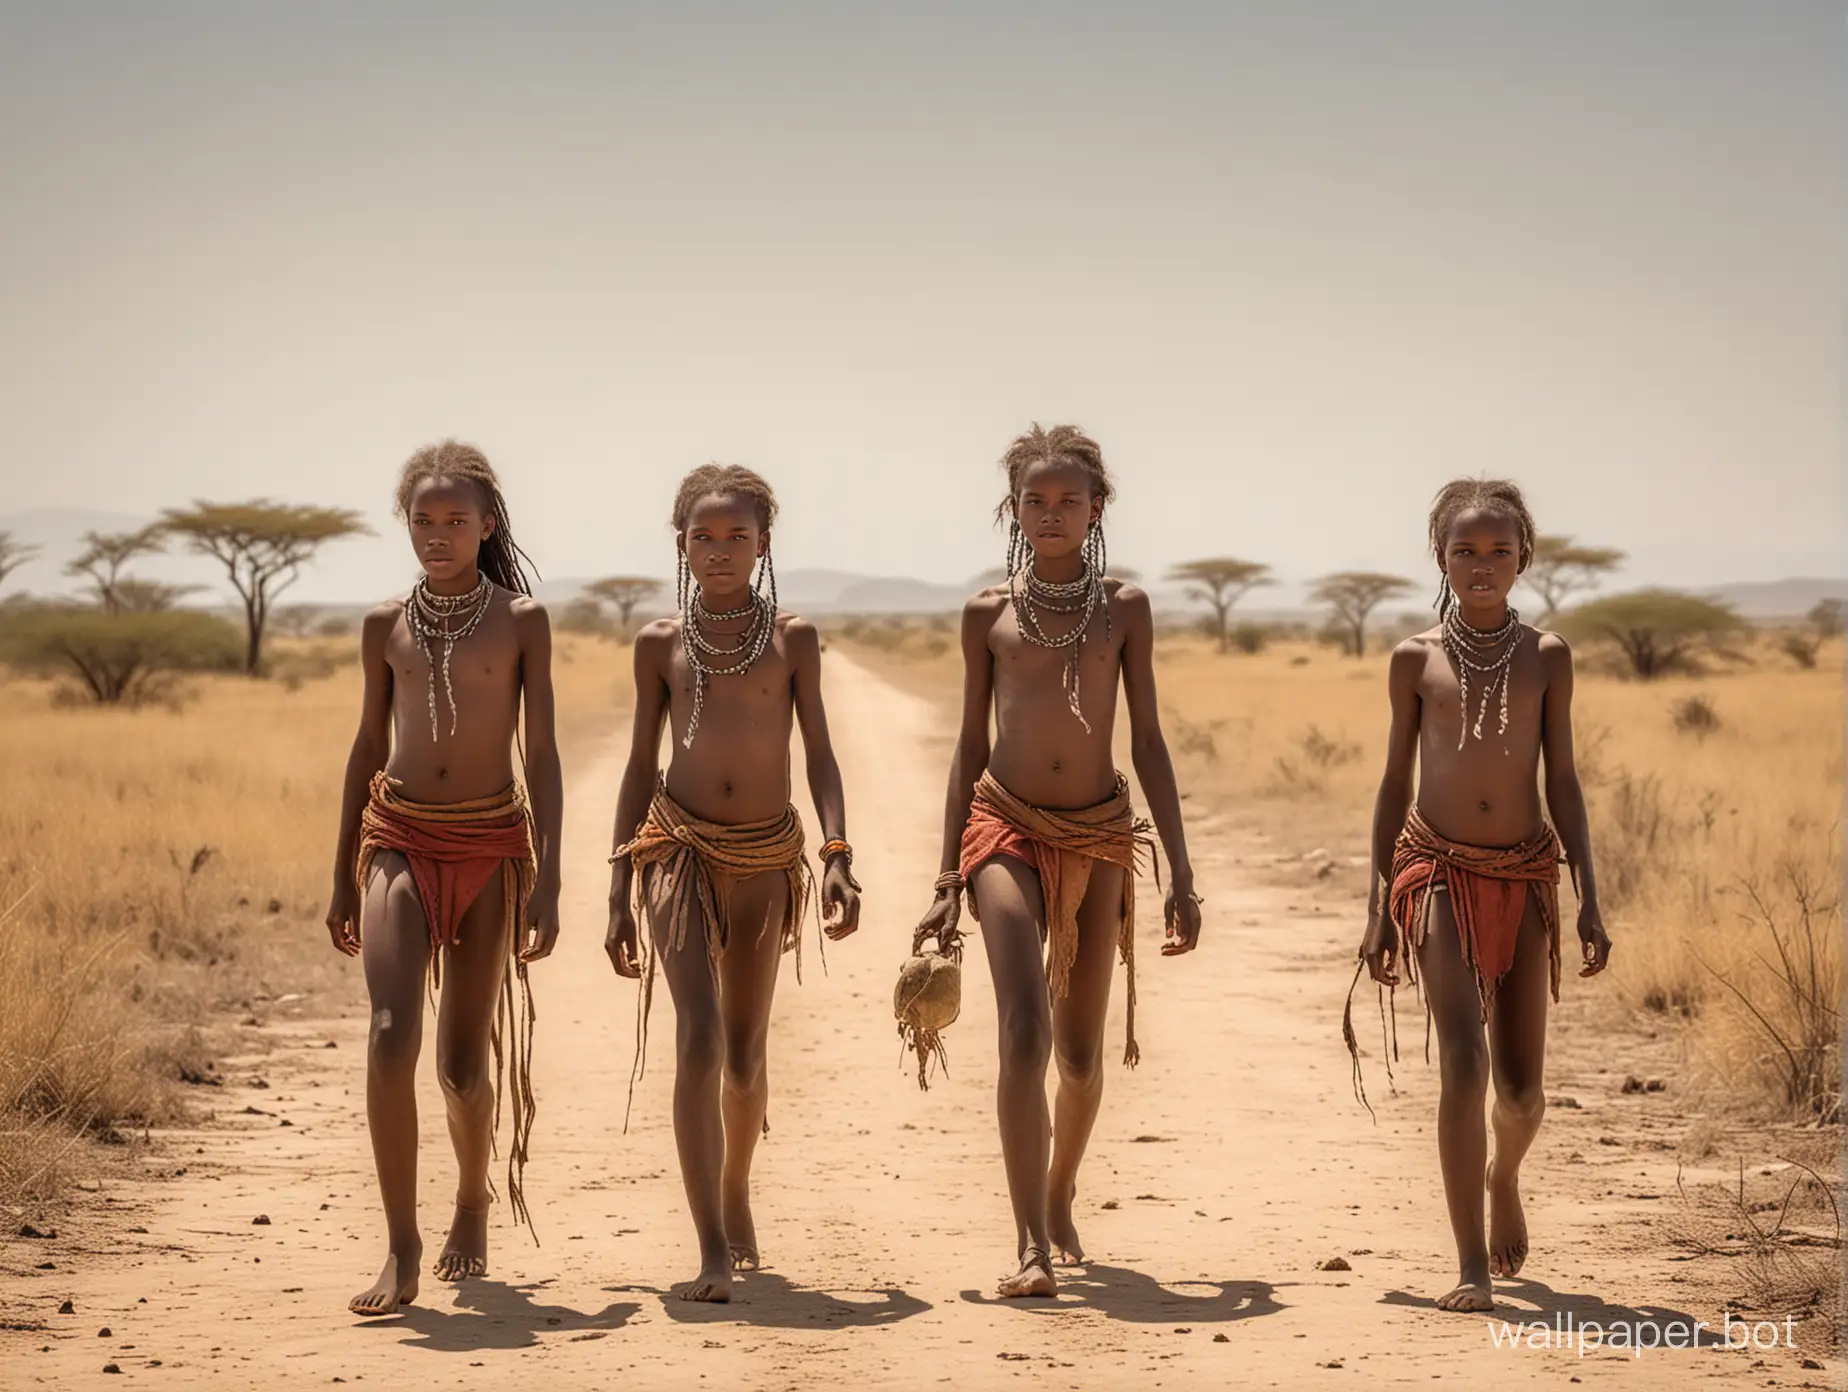 африканские девочки 12 лет из племени людоедов в полный рост идут по саванне под жарким солнцем